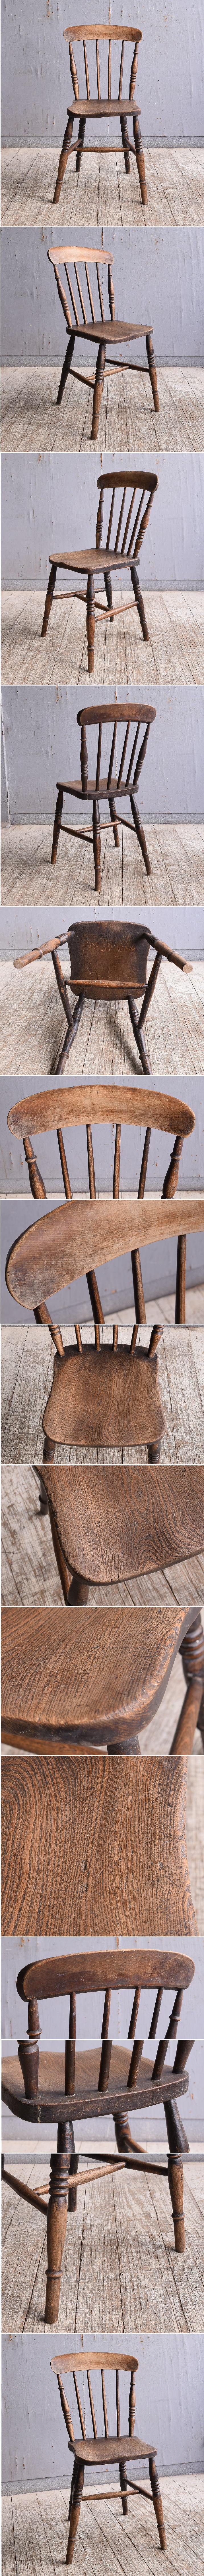 イギリス アンティーク家具 キッチンチェア 椅子 10802